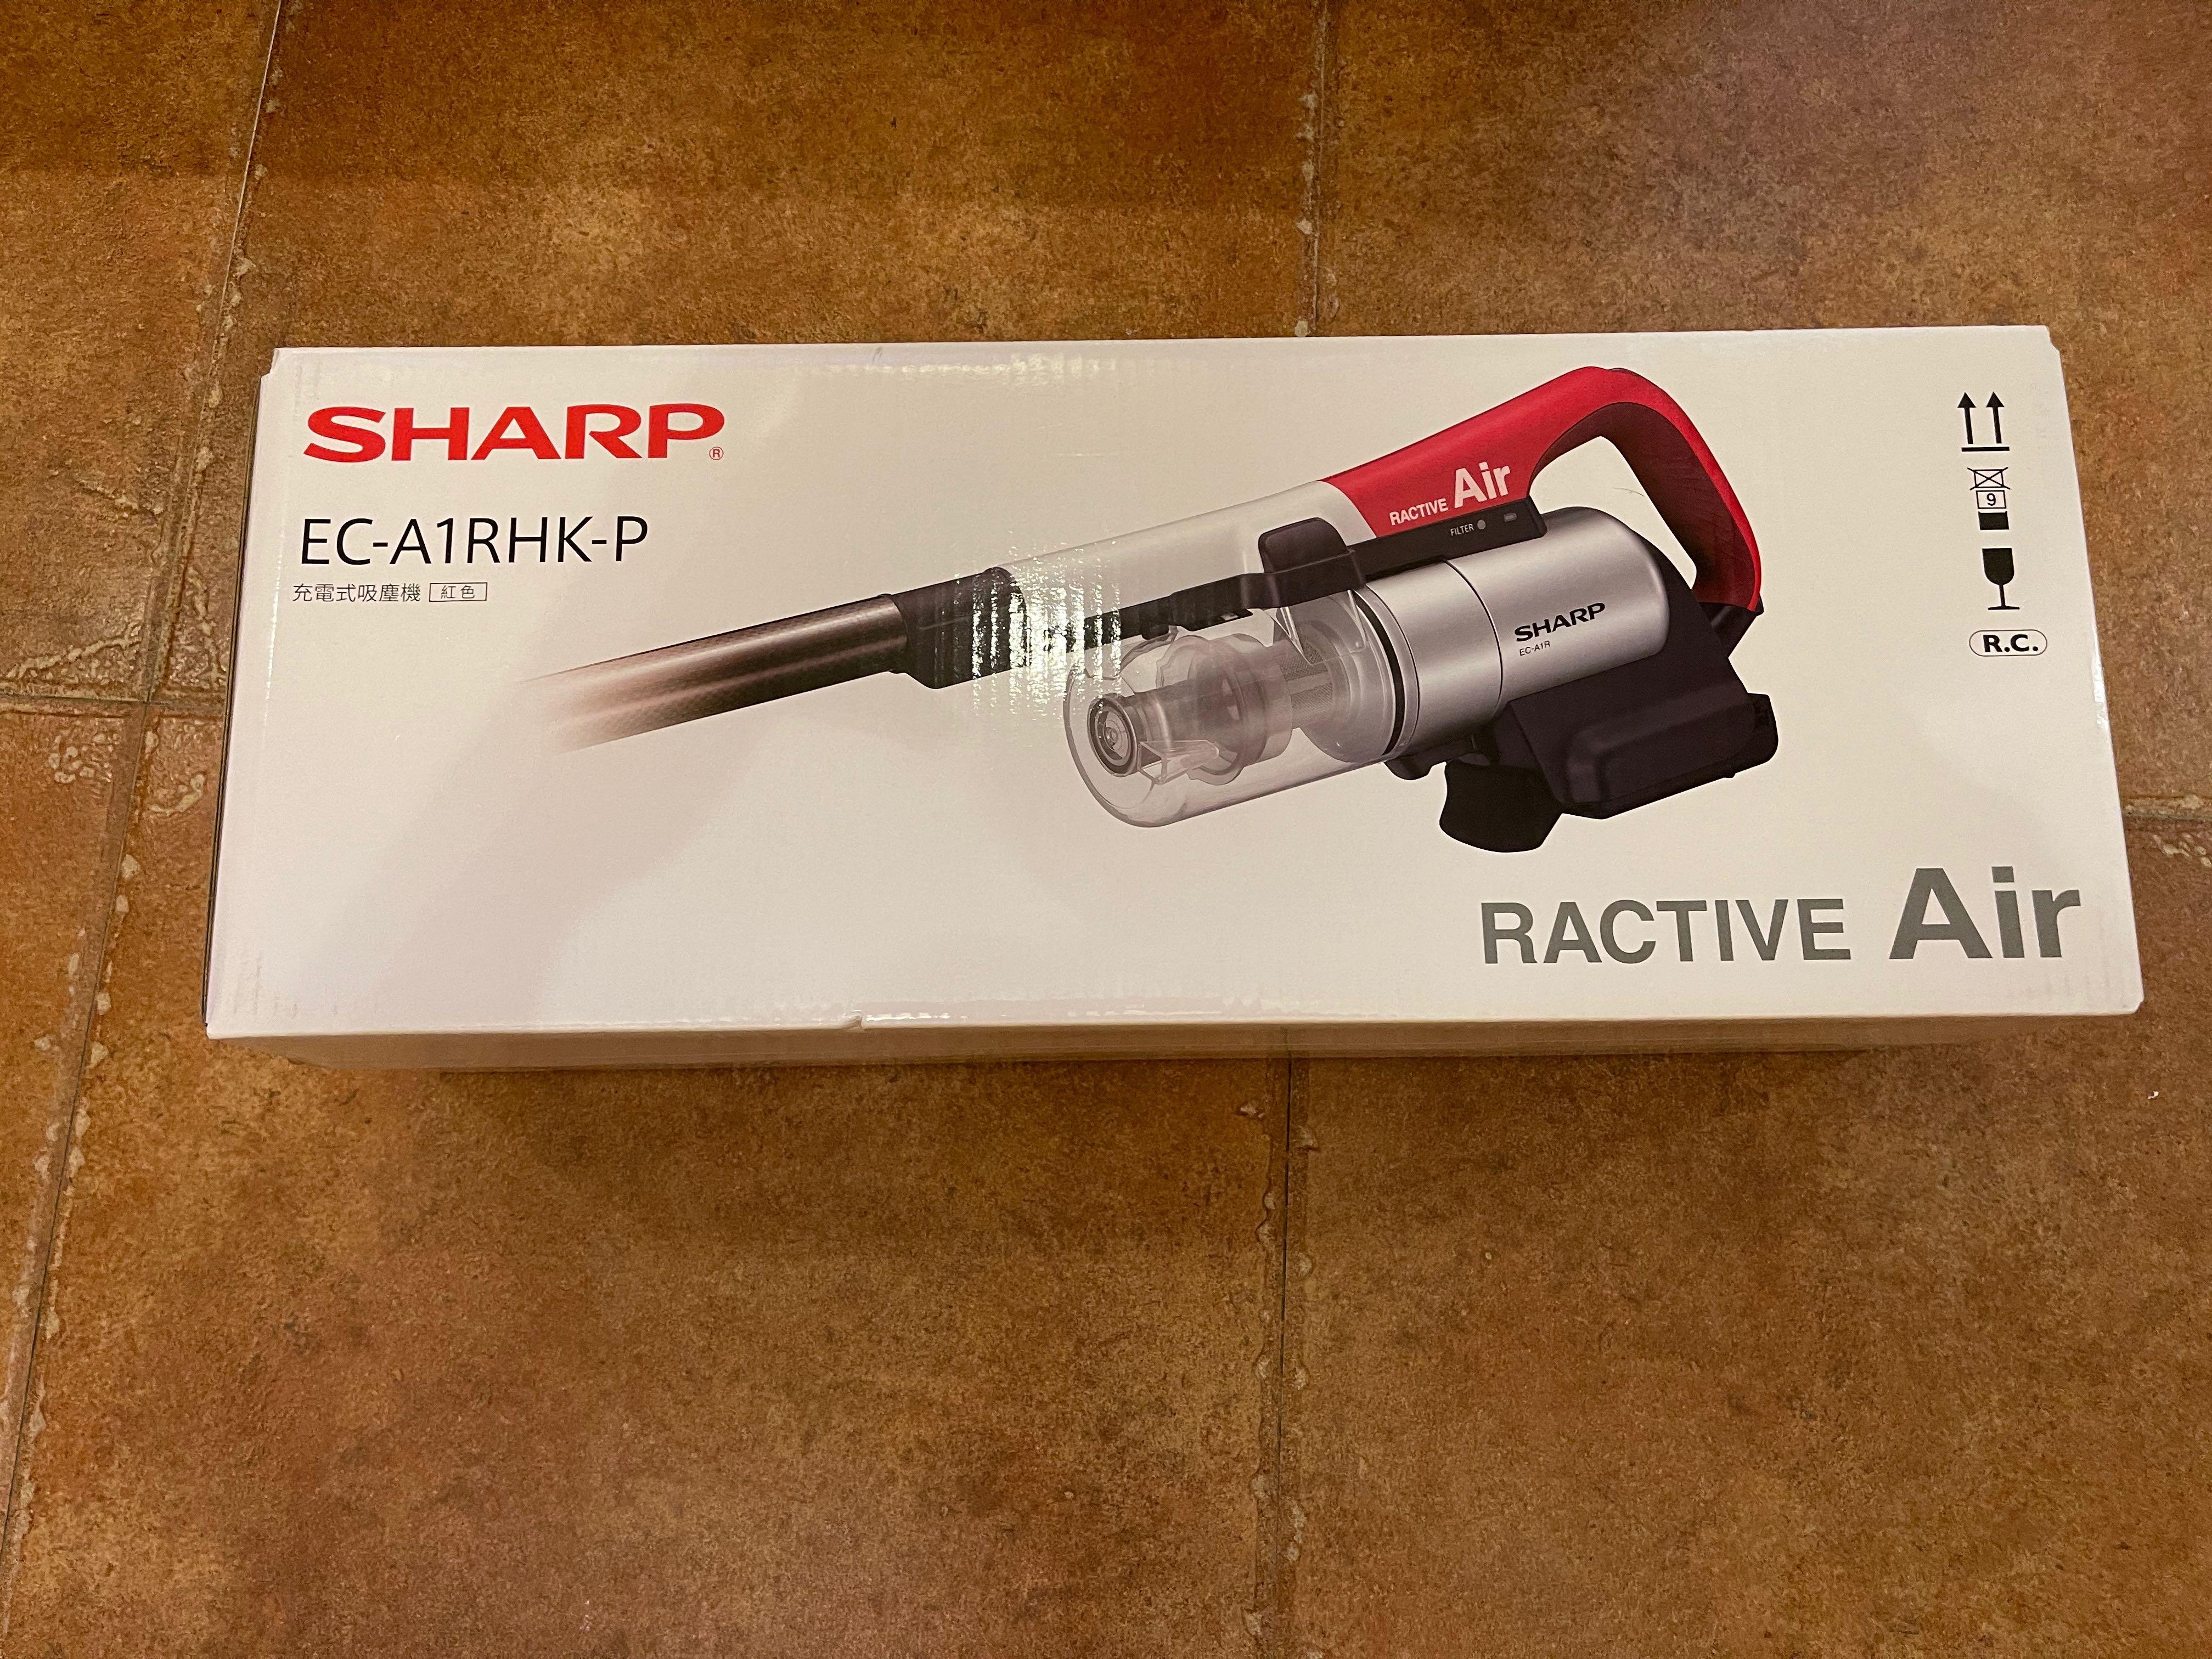 Sharp EC-A1RHK-P 直立式輕巧無線吸塵機寶石紅香港行貨, 家庭電器